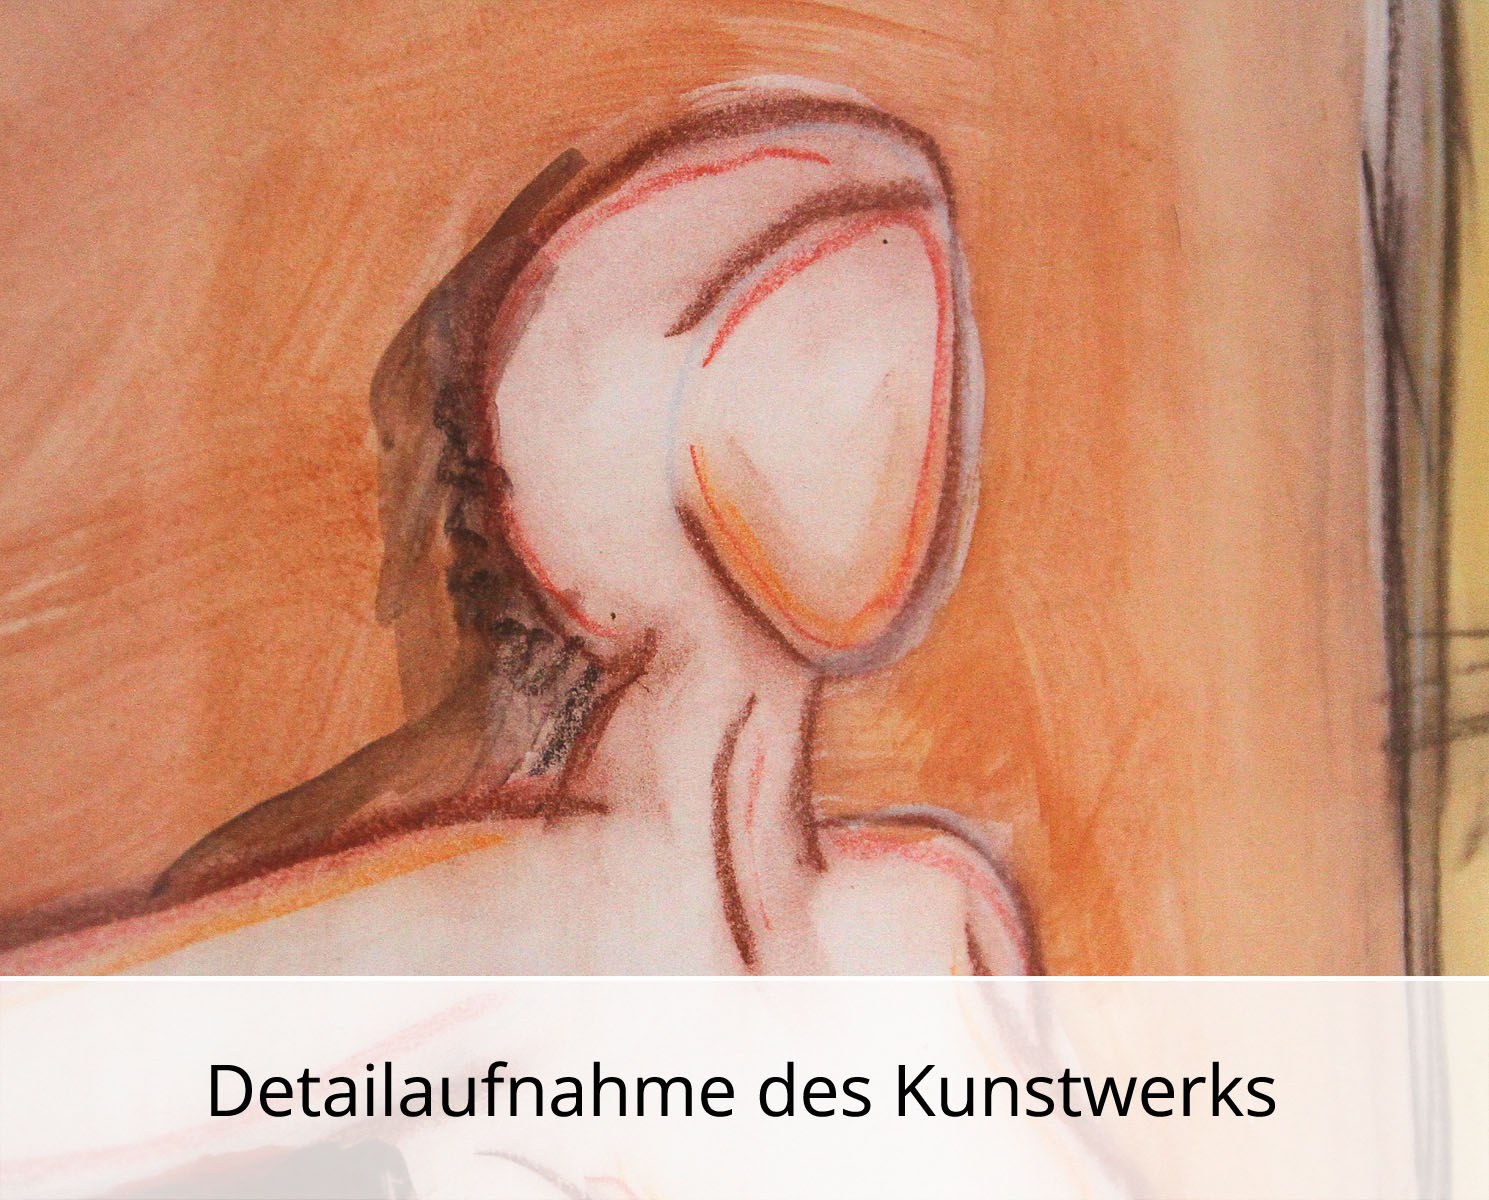 Acrylbild auf Papier, C. Blechschmidt: "Das Tuch", Original/Unikat